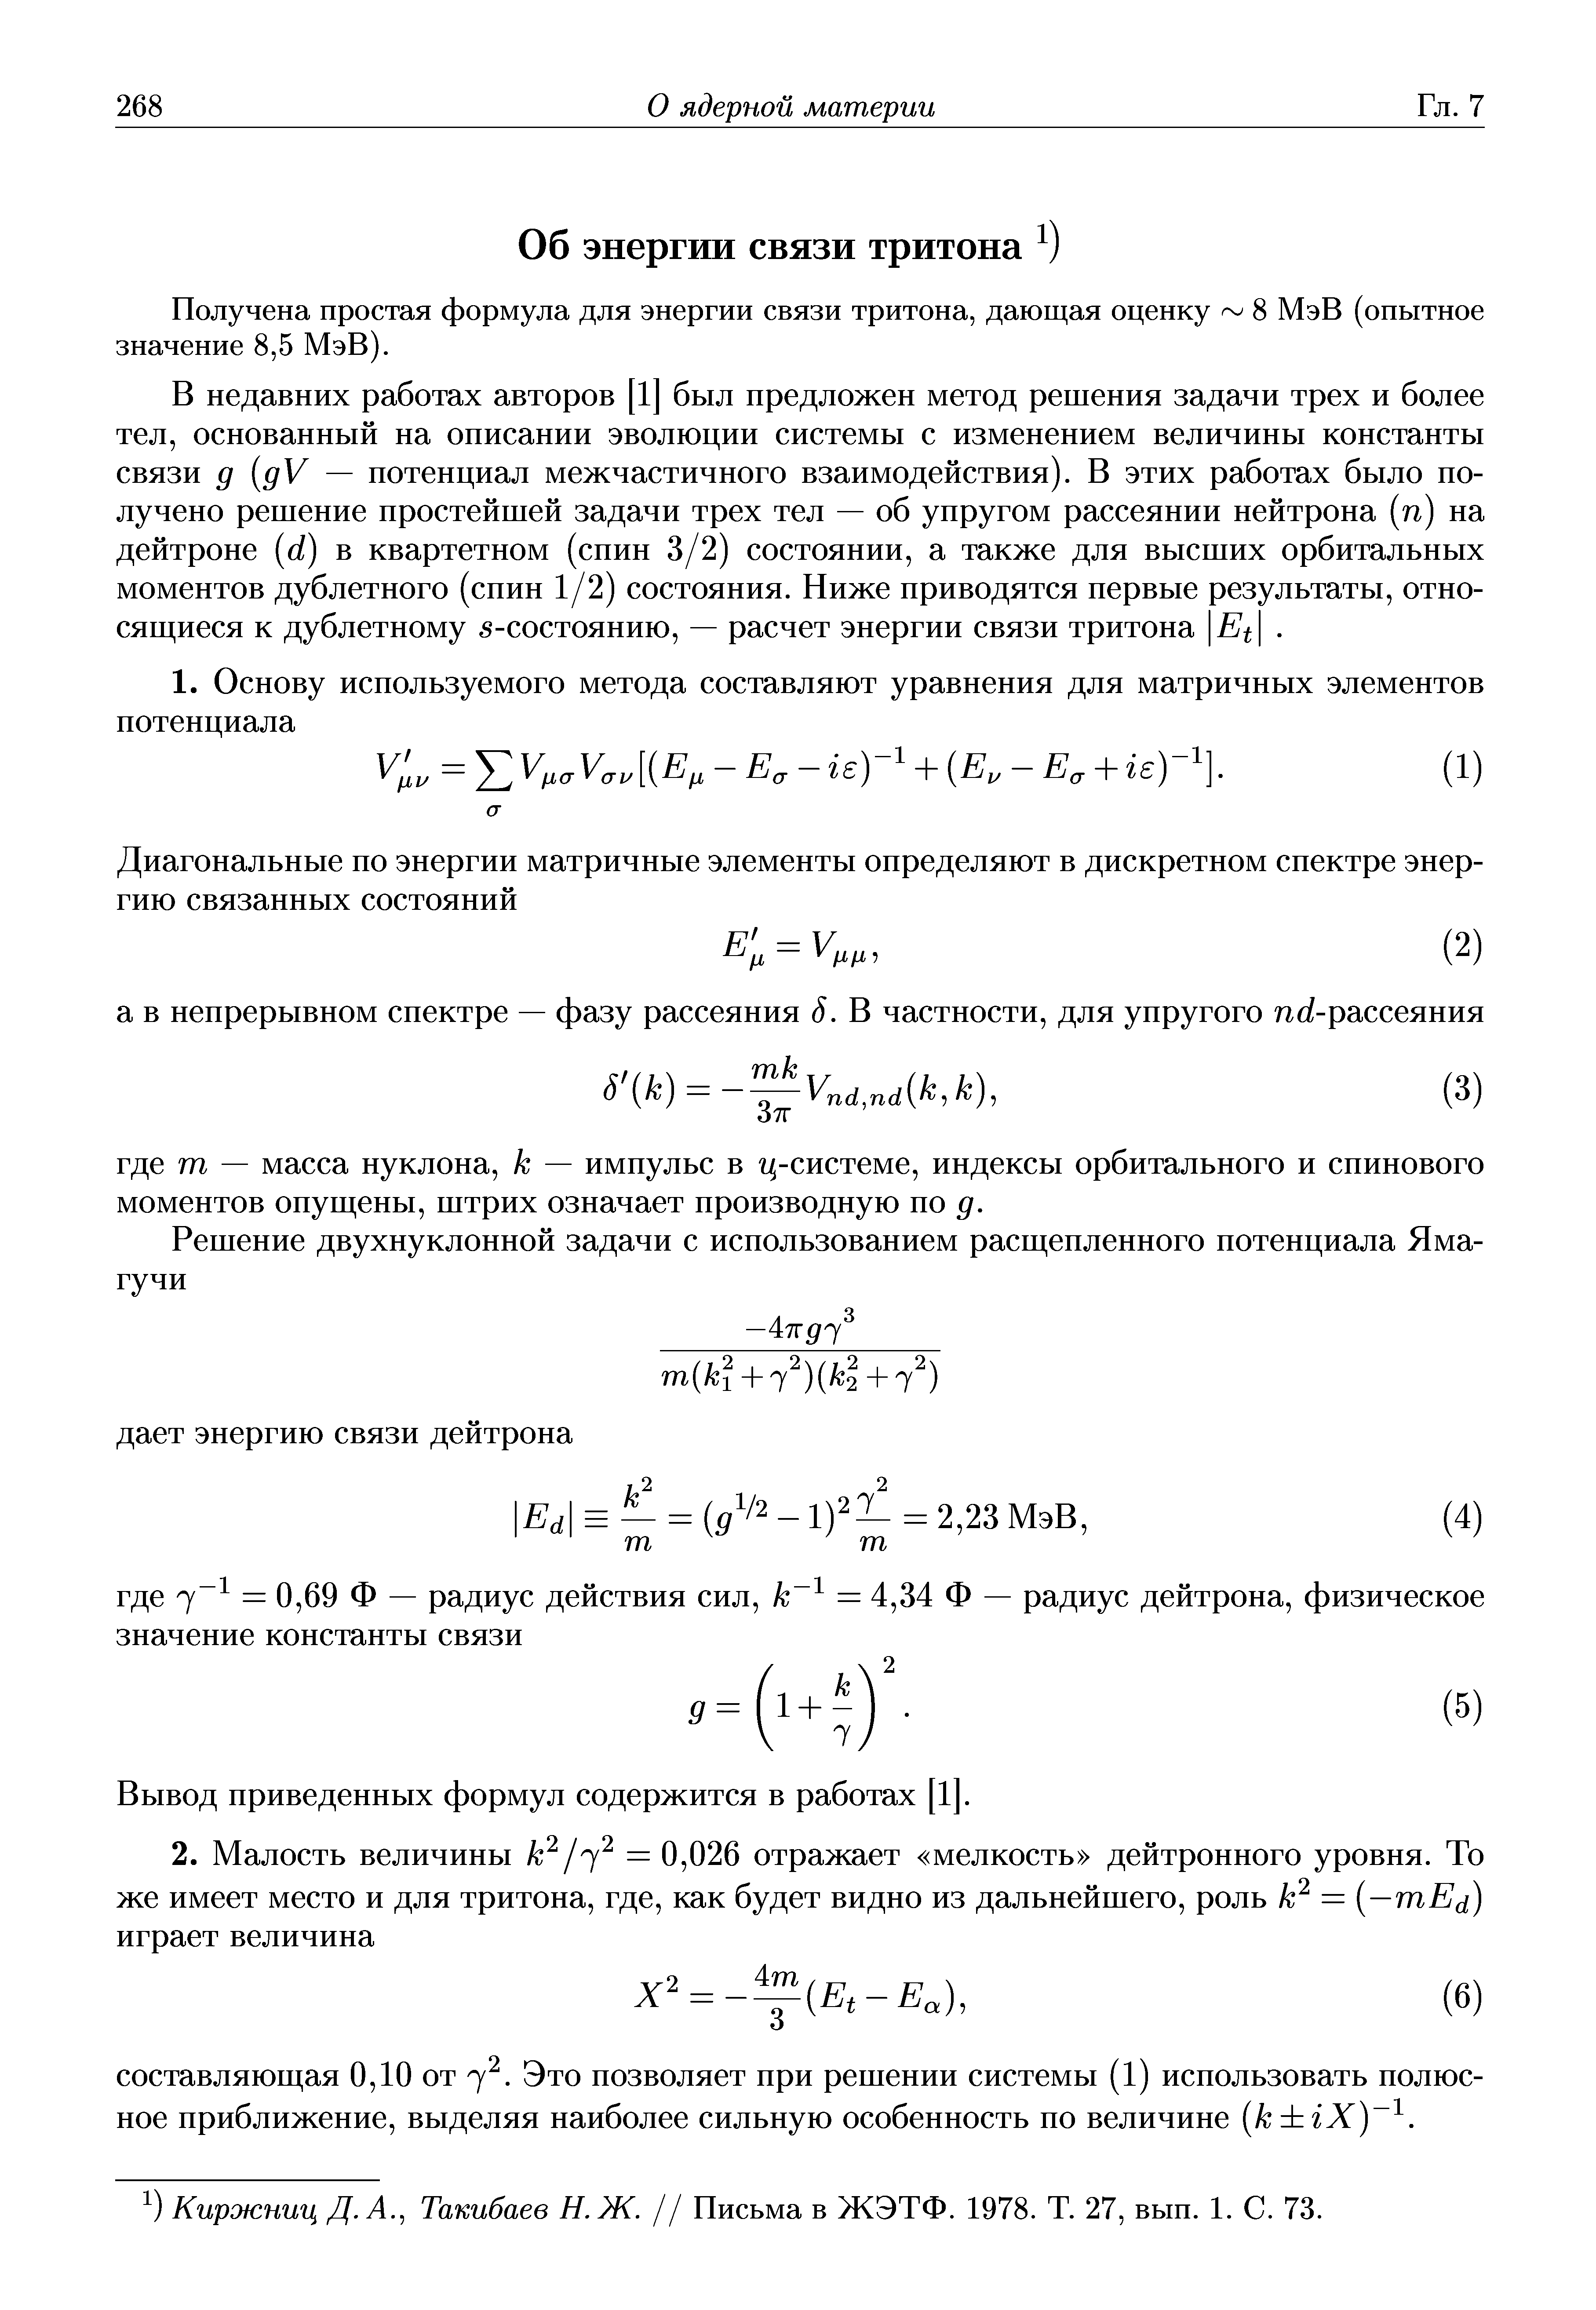 Получена простая формула для энергии связи тритона, дающая оценку 8 МэВ (опытное значение 8,5 МэВ).
